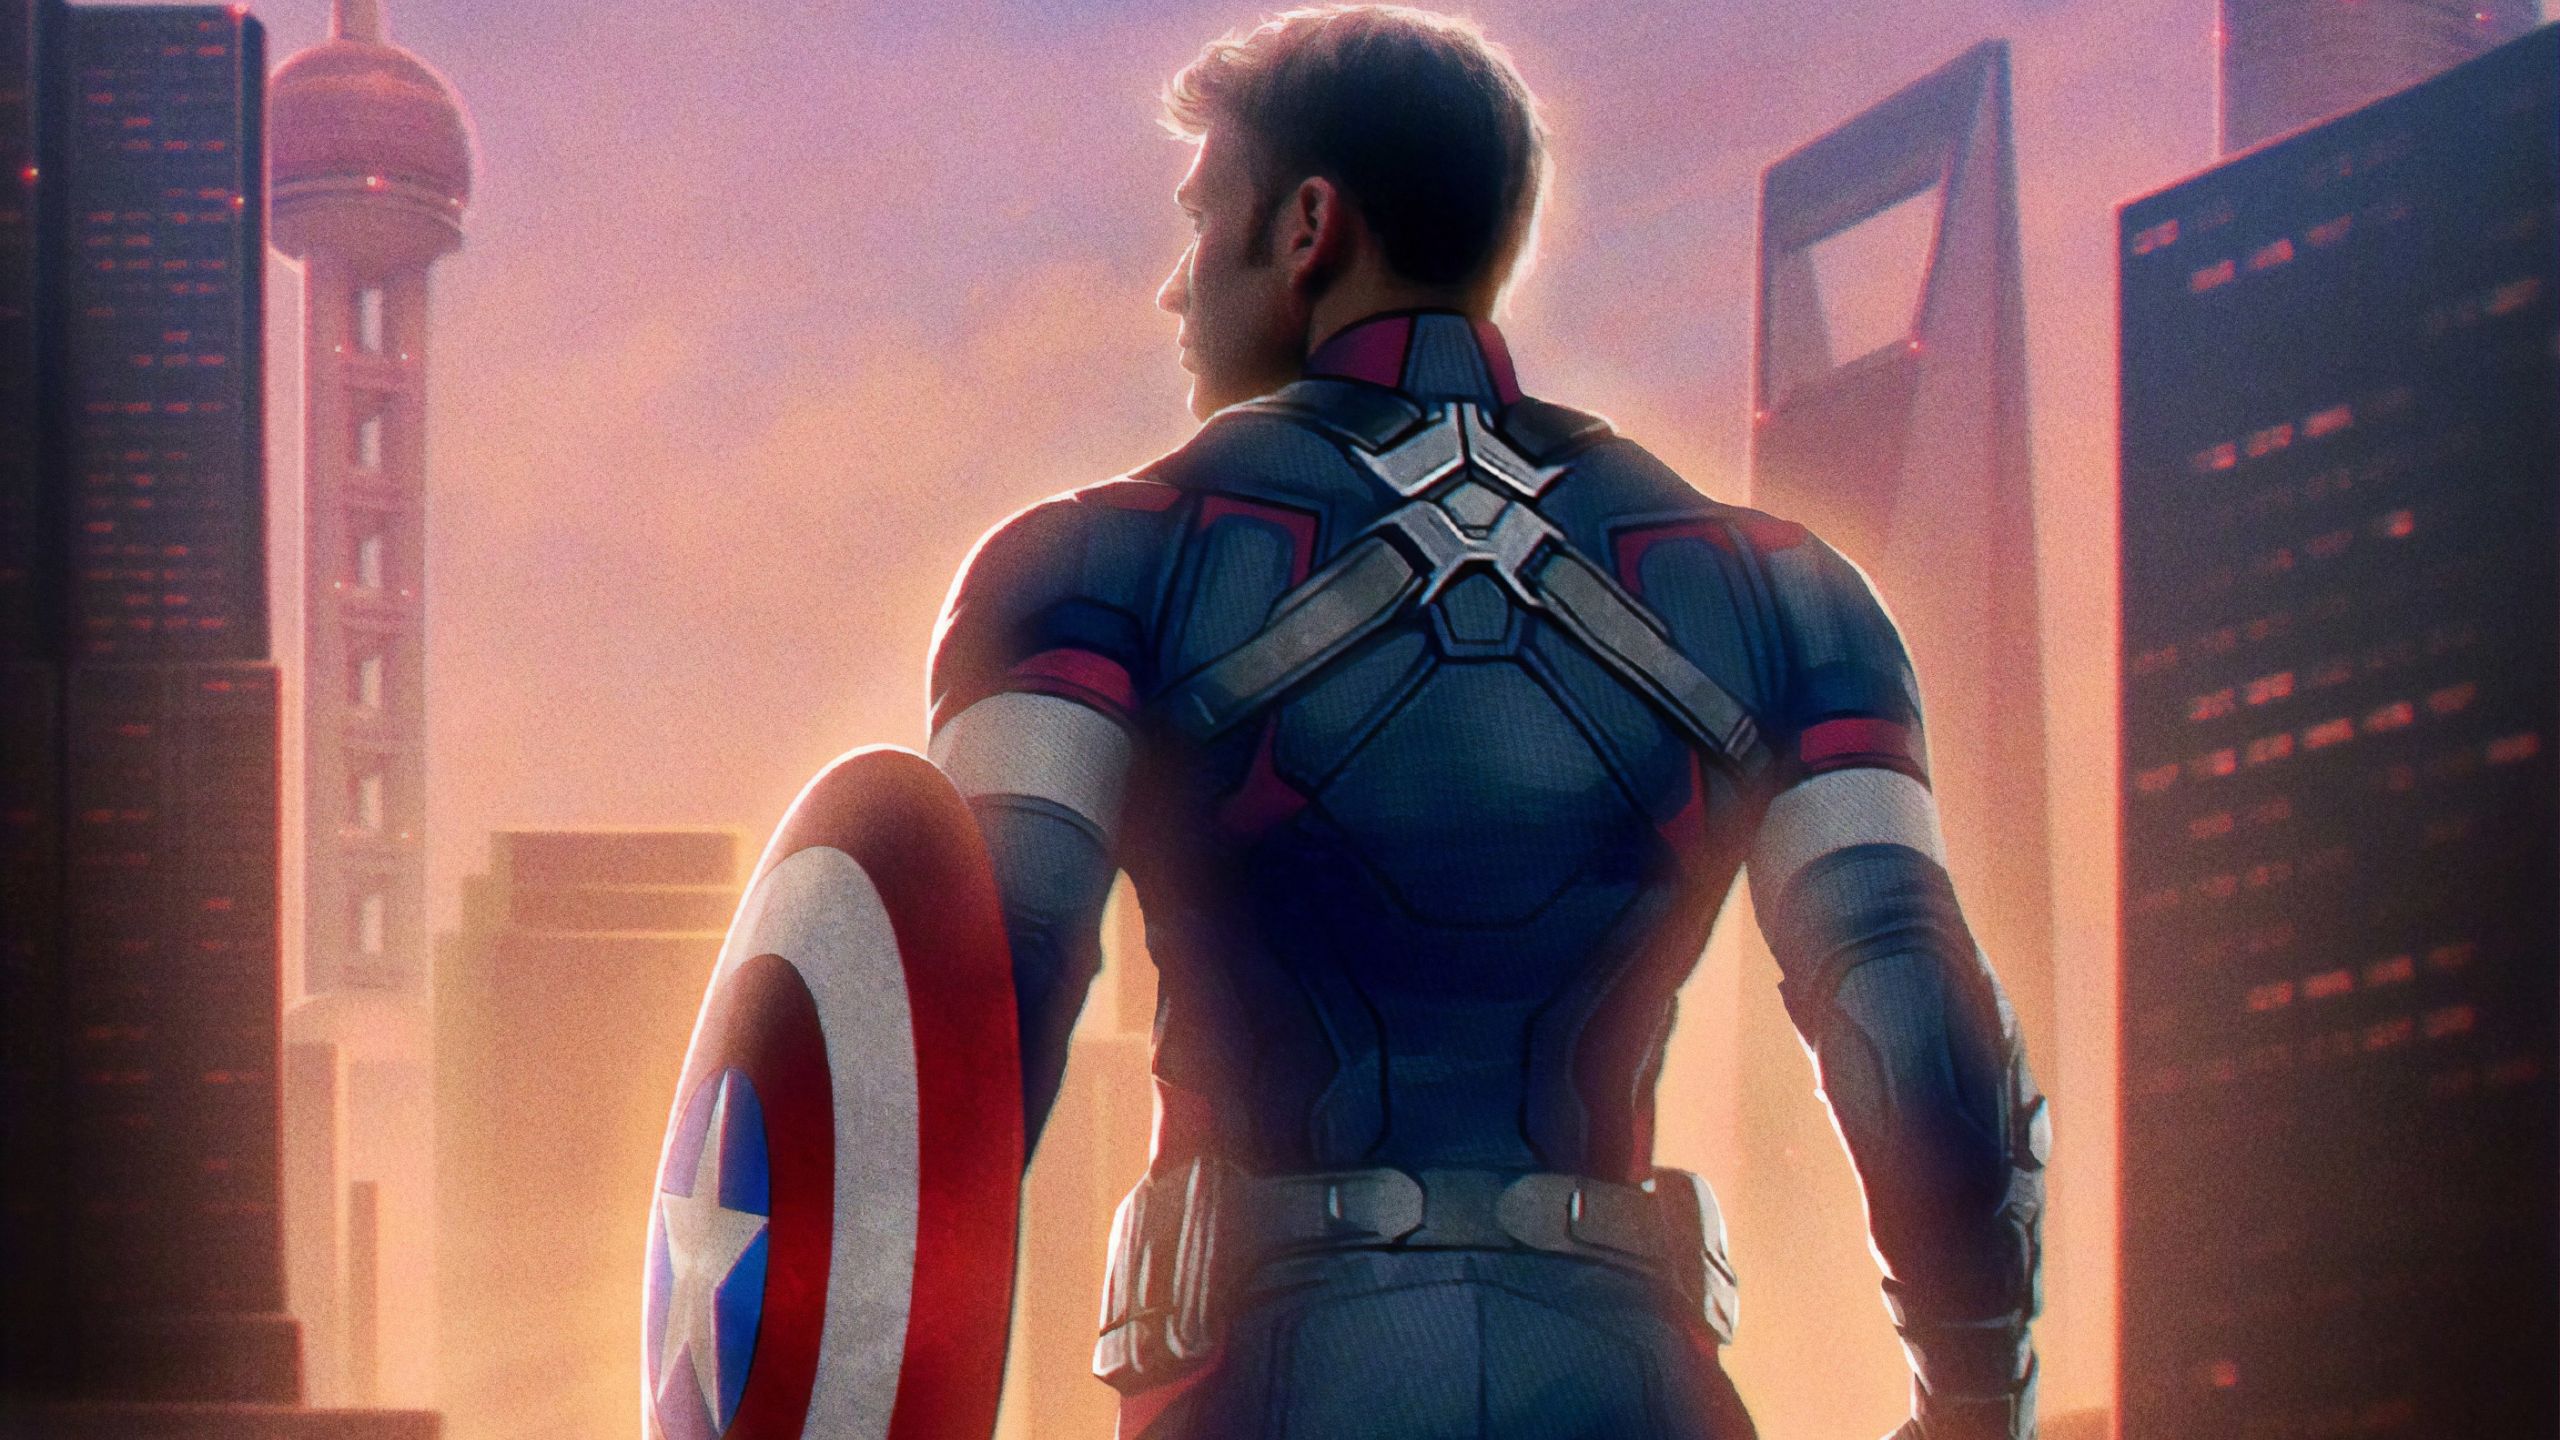 Captain America Avengers Endgame 1440P Resolution